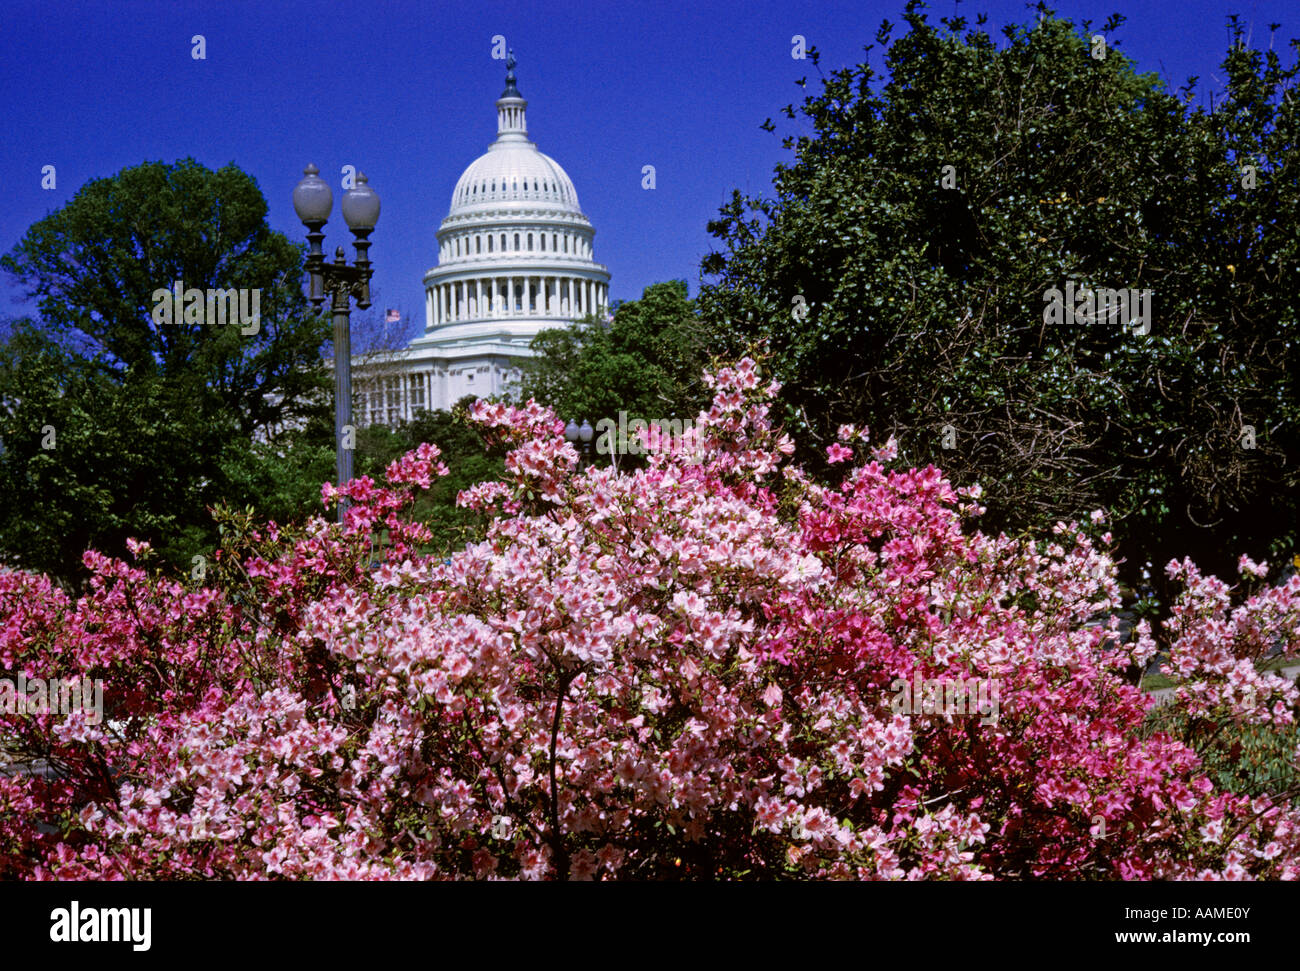 WASHINGTON DC CAPITOL BUILDING AU PRINTEMPS avec les cerisiers en fleurs Banque D'Images